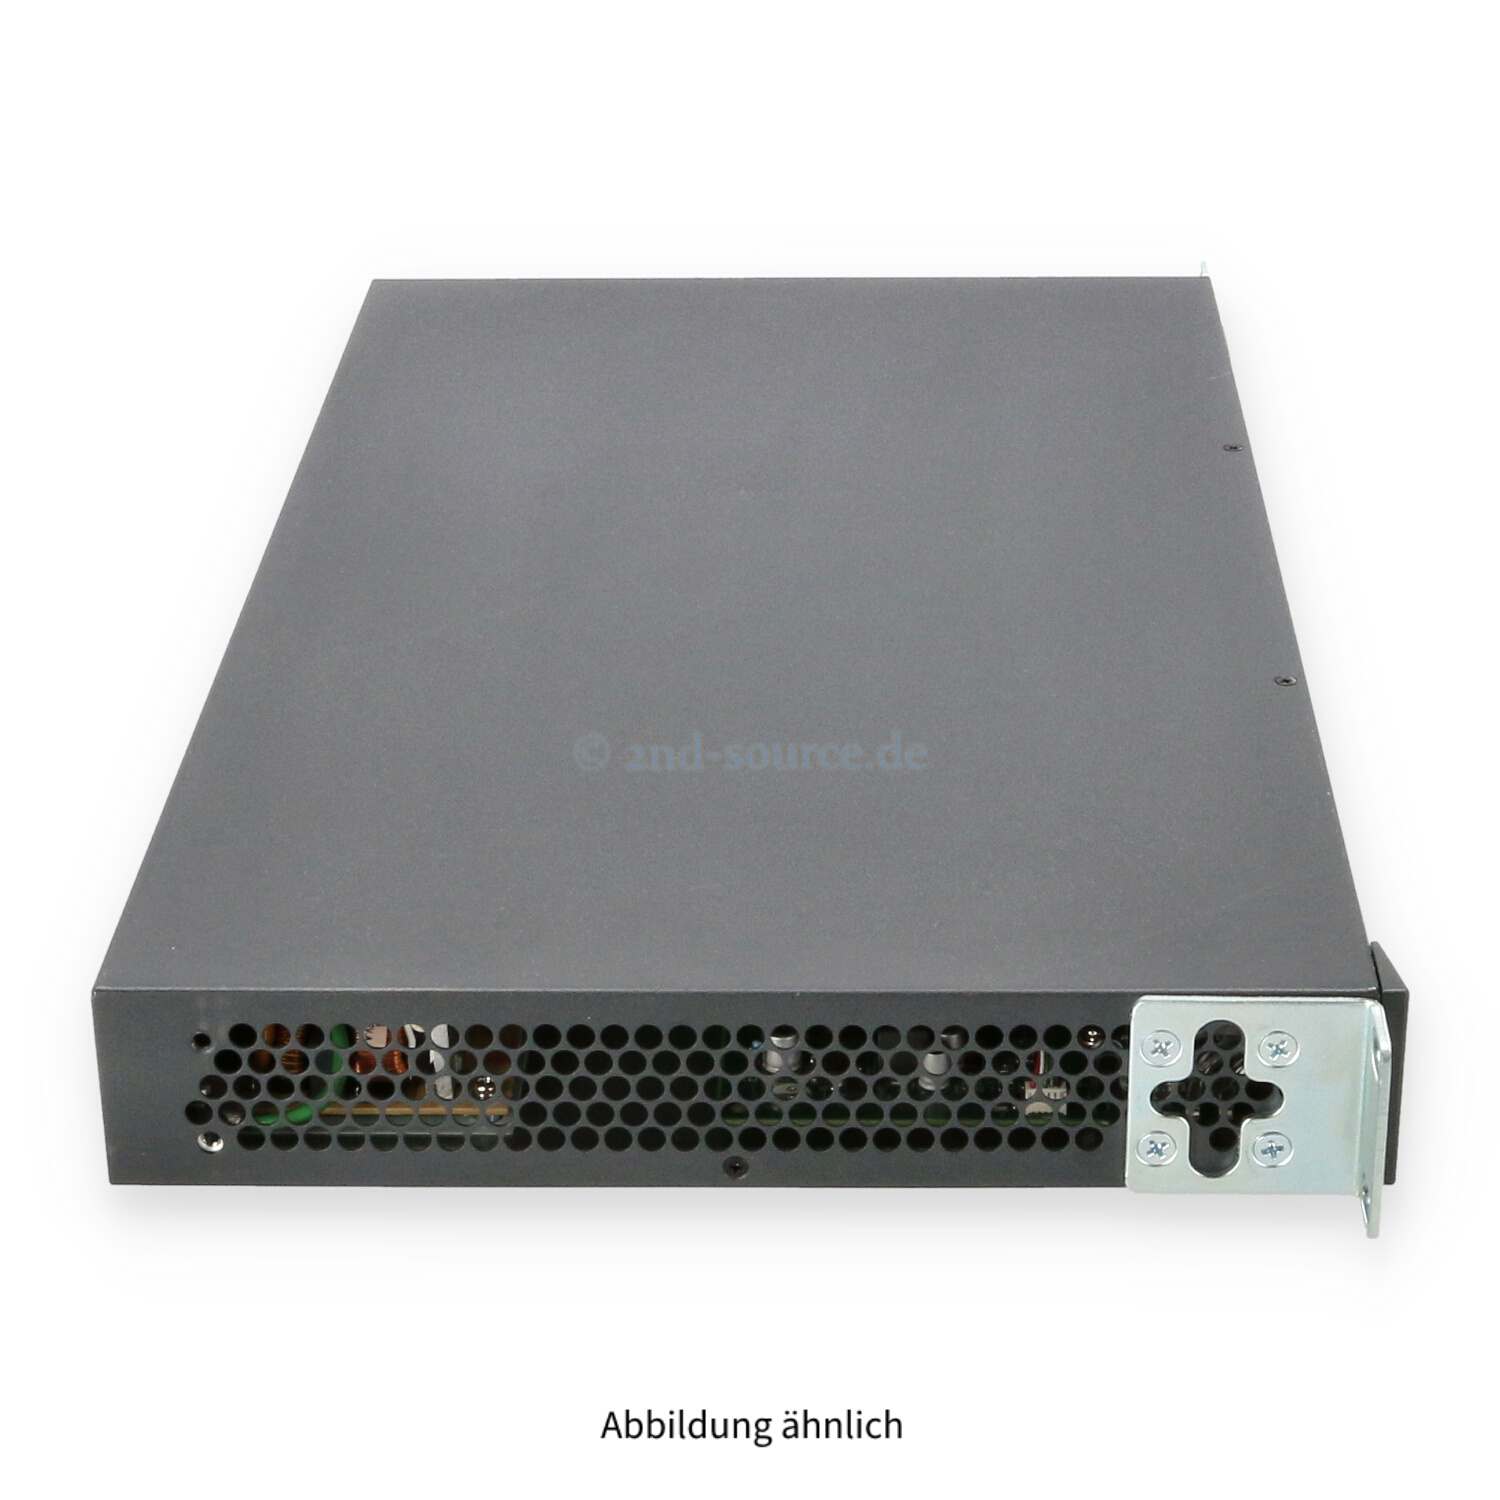 HPE ProCurve 2530-48G 48x 1GbE 4x SFP 1GbE Managed Switch J9775A J9775-61001